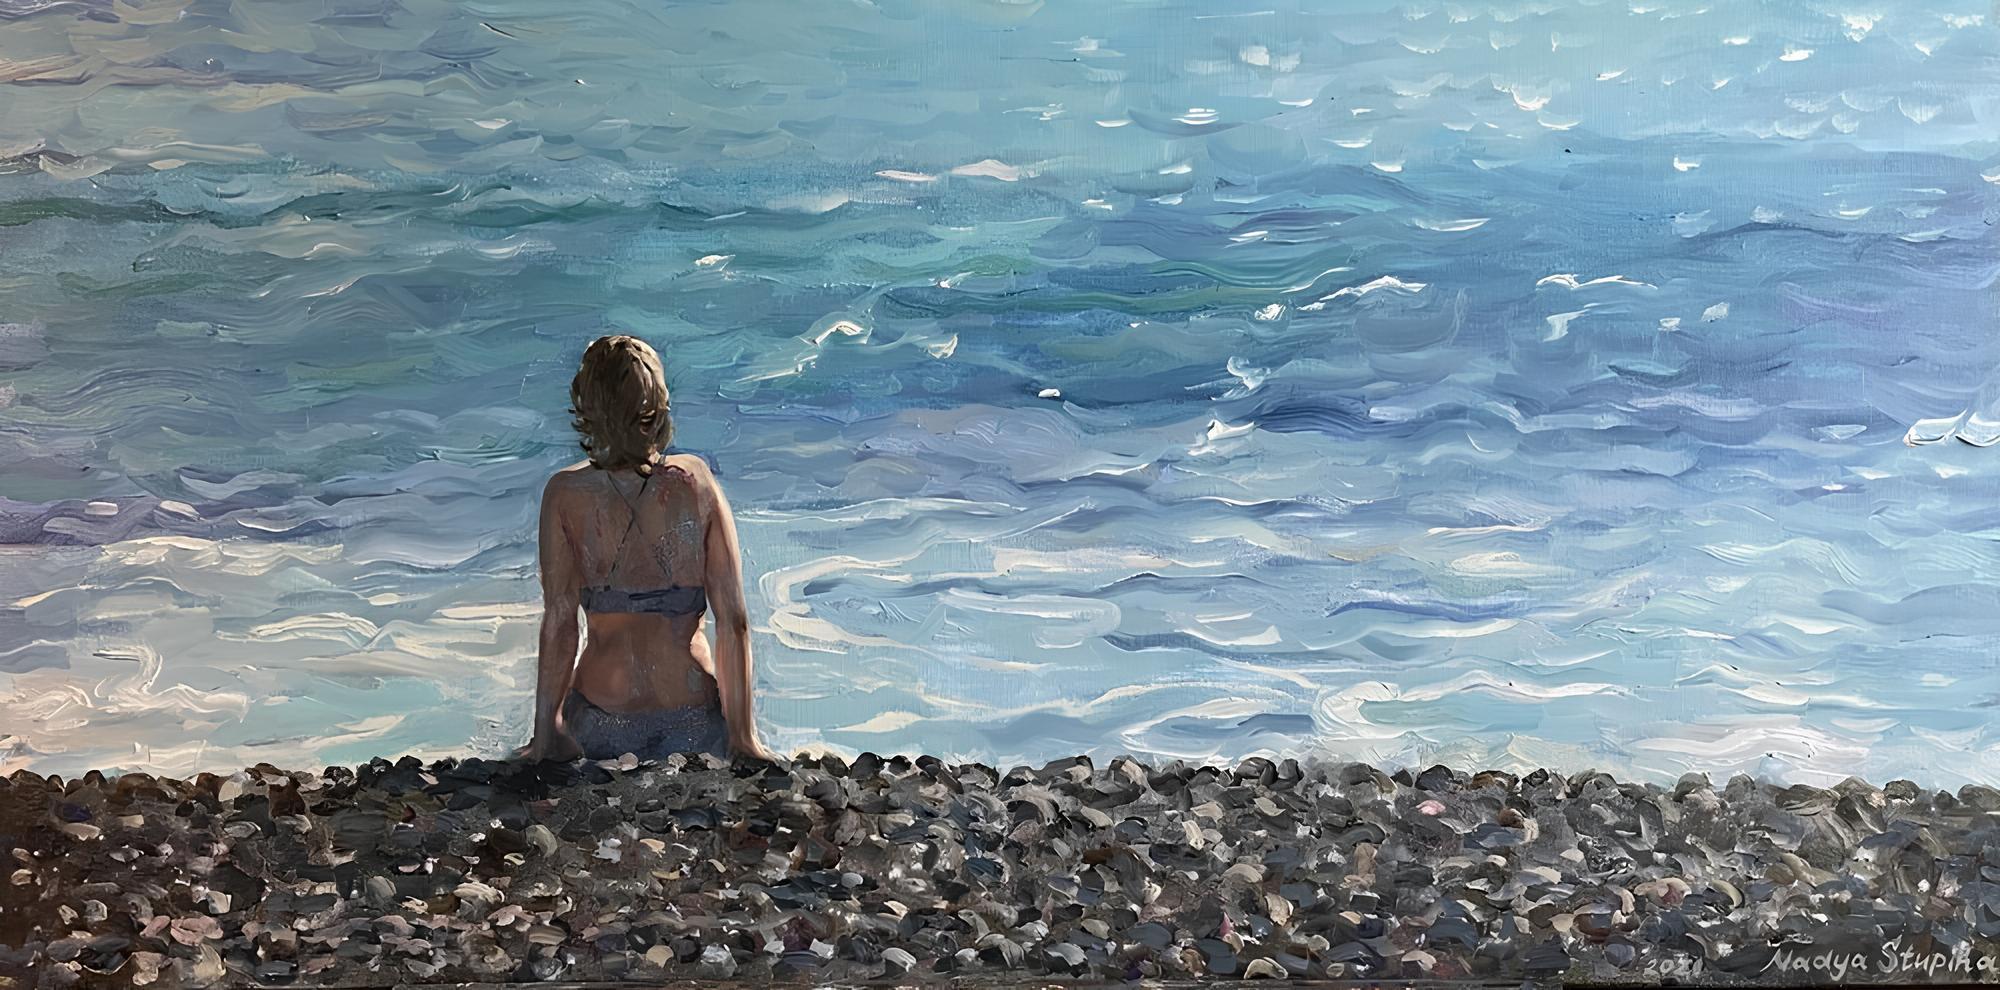 Nadezda Stupina Figurative Painting - Girl&Sea